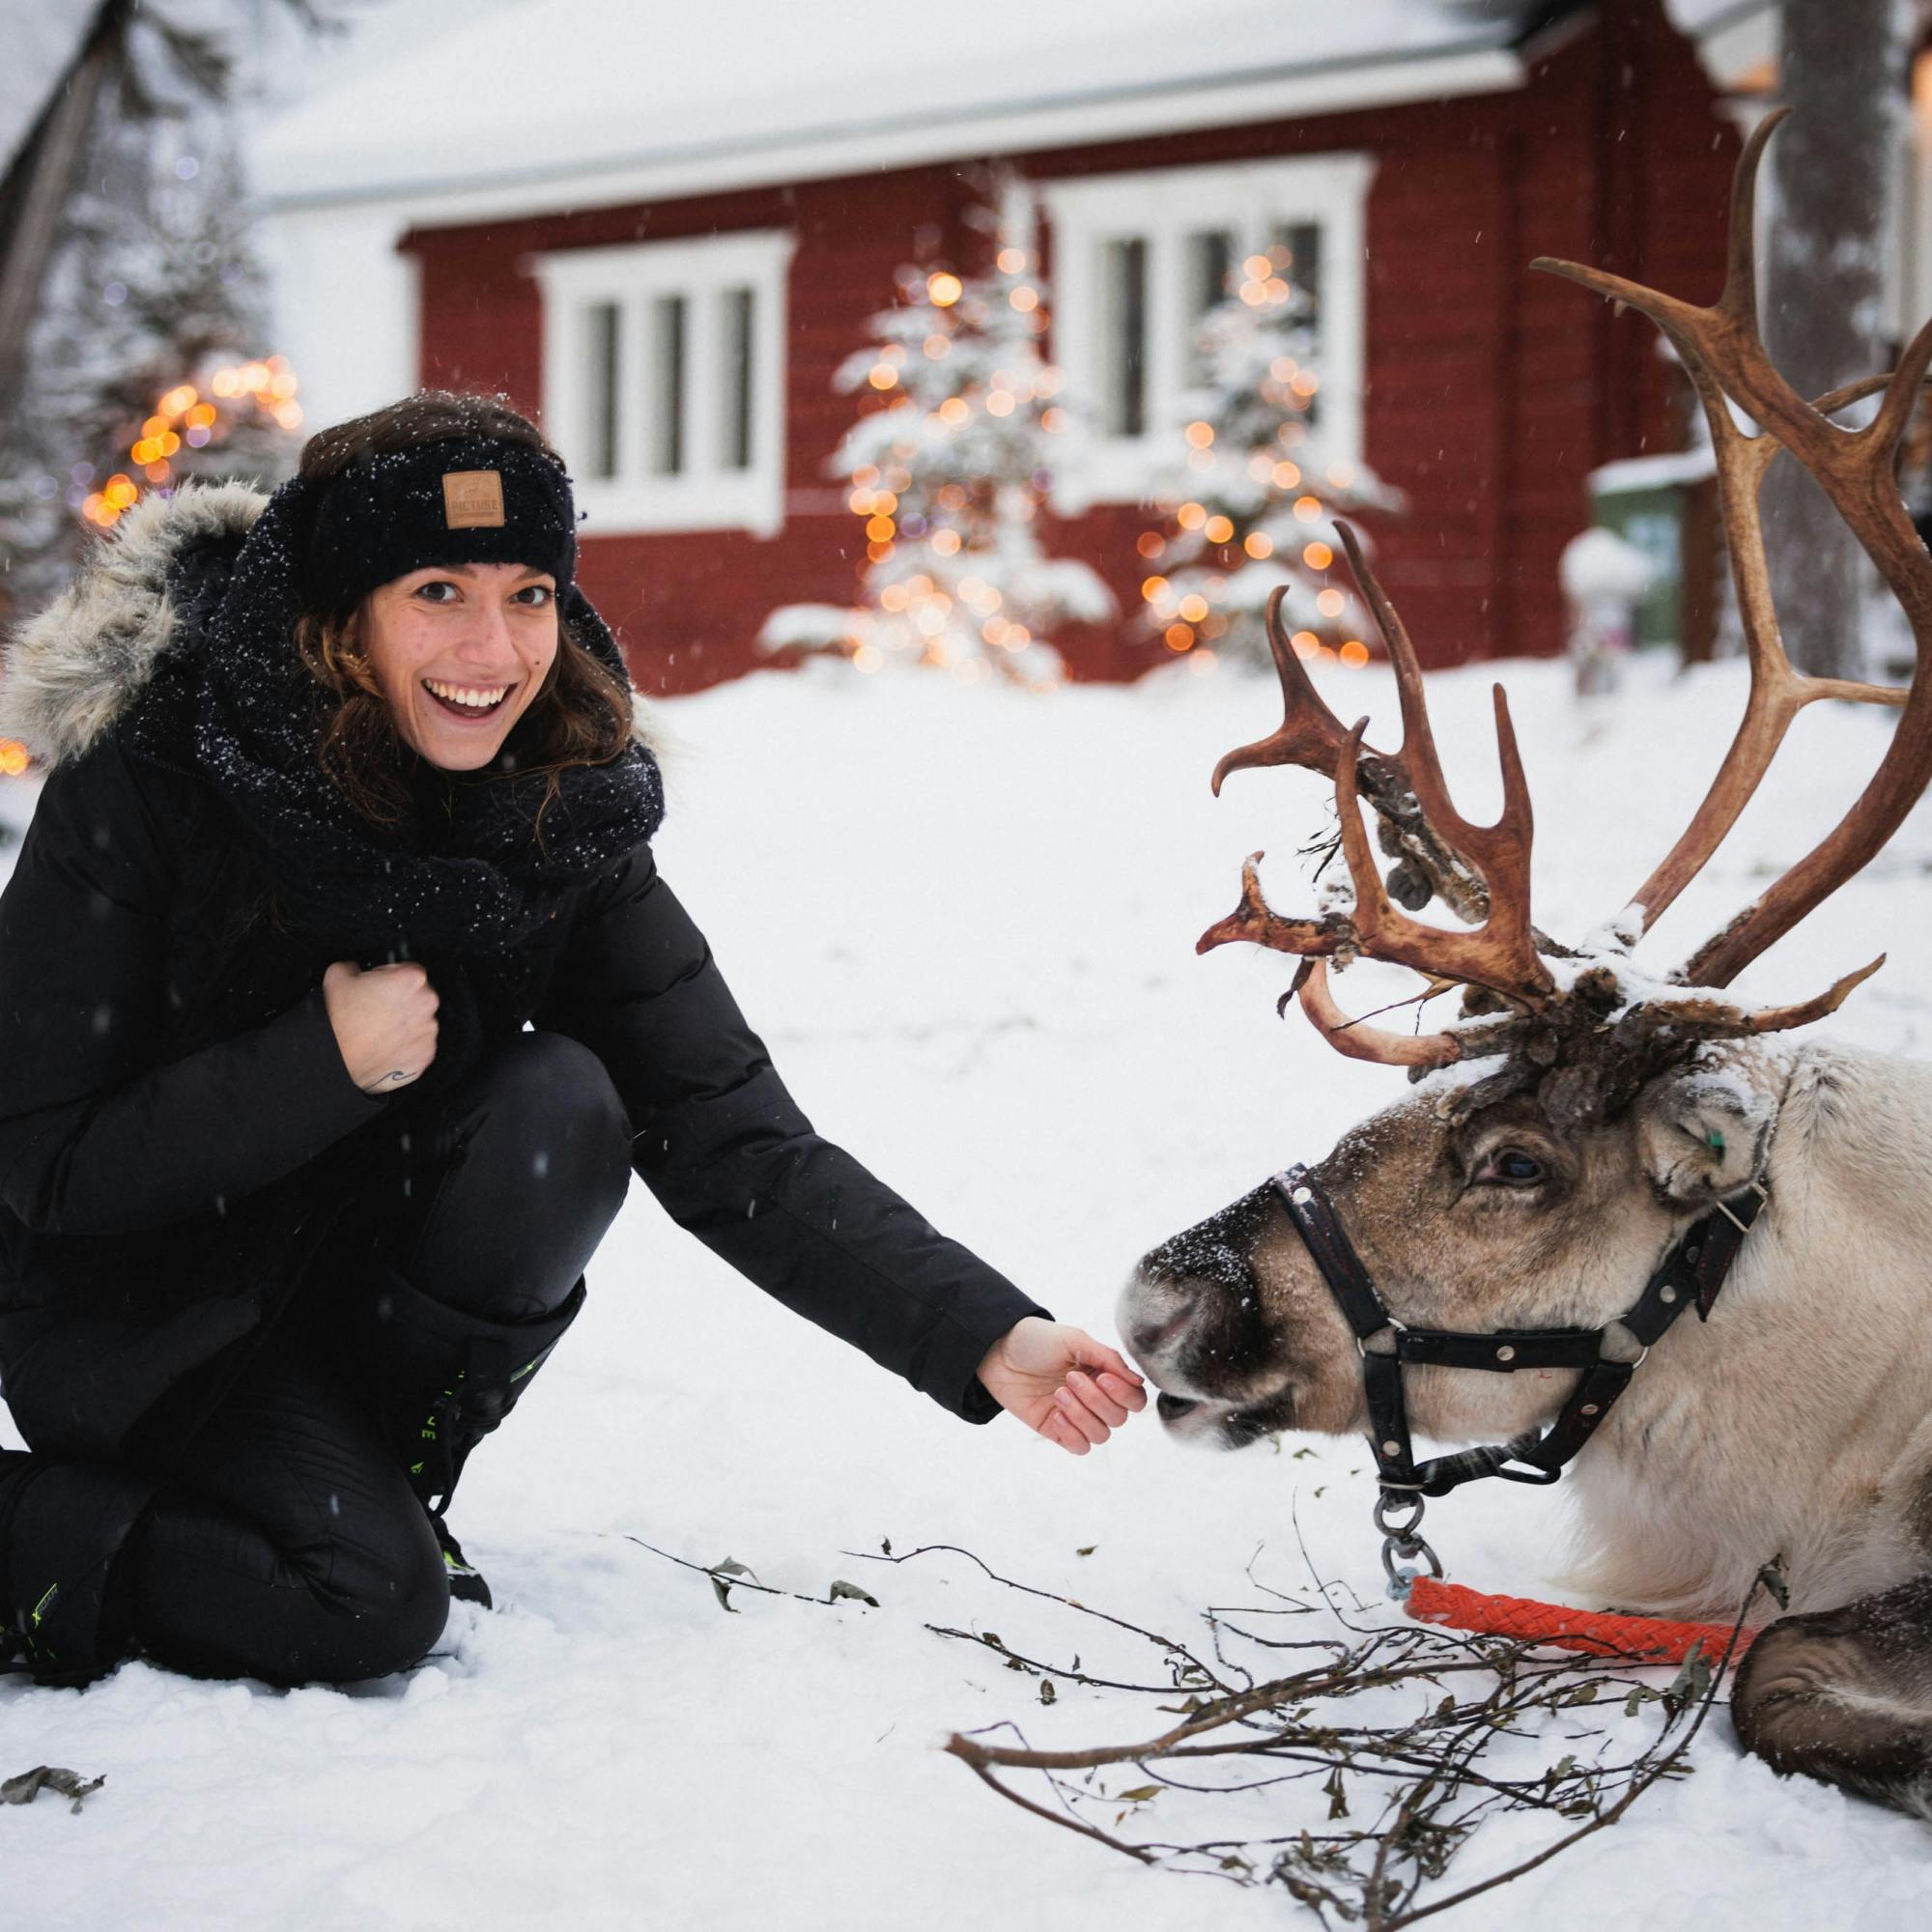 Dzień rodzinny ze skuterami śnieżnymi, zwierzętami z Arktyki i Wioską Świętego Mikołaja